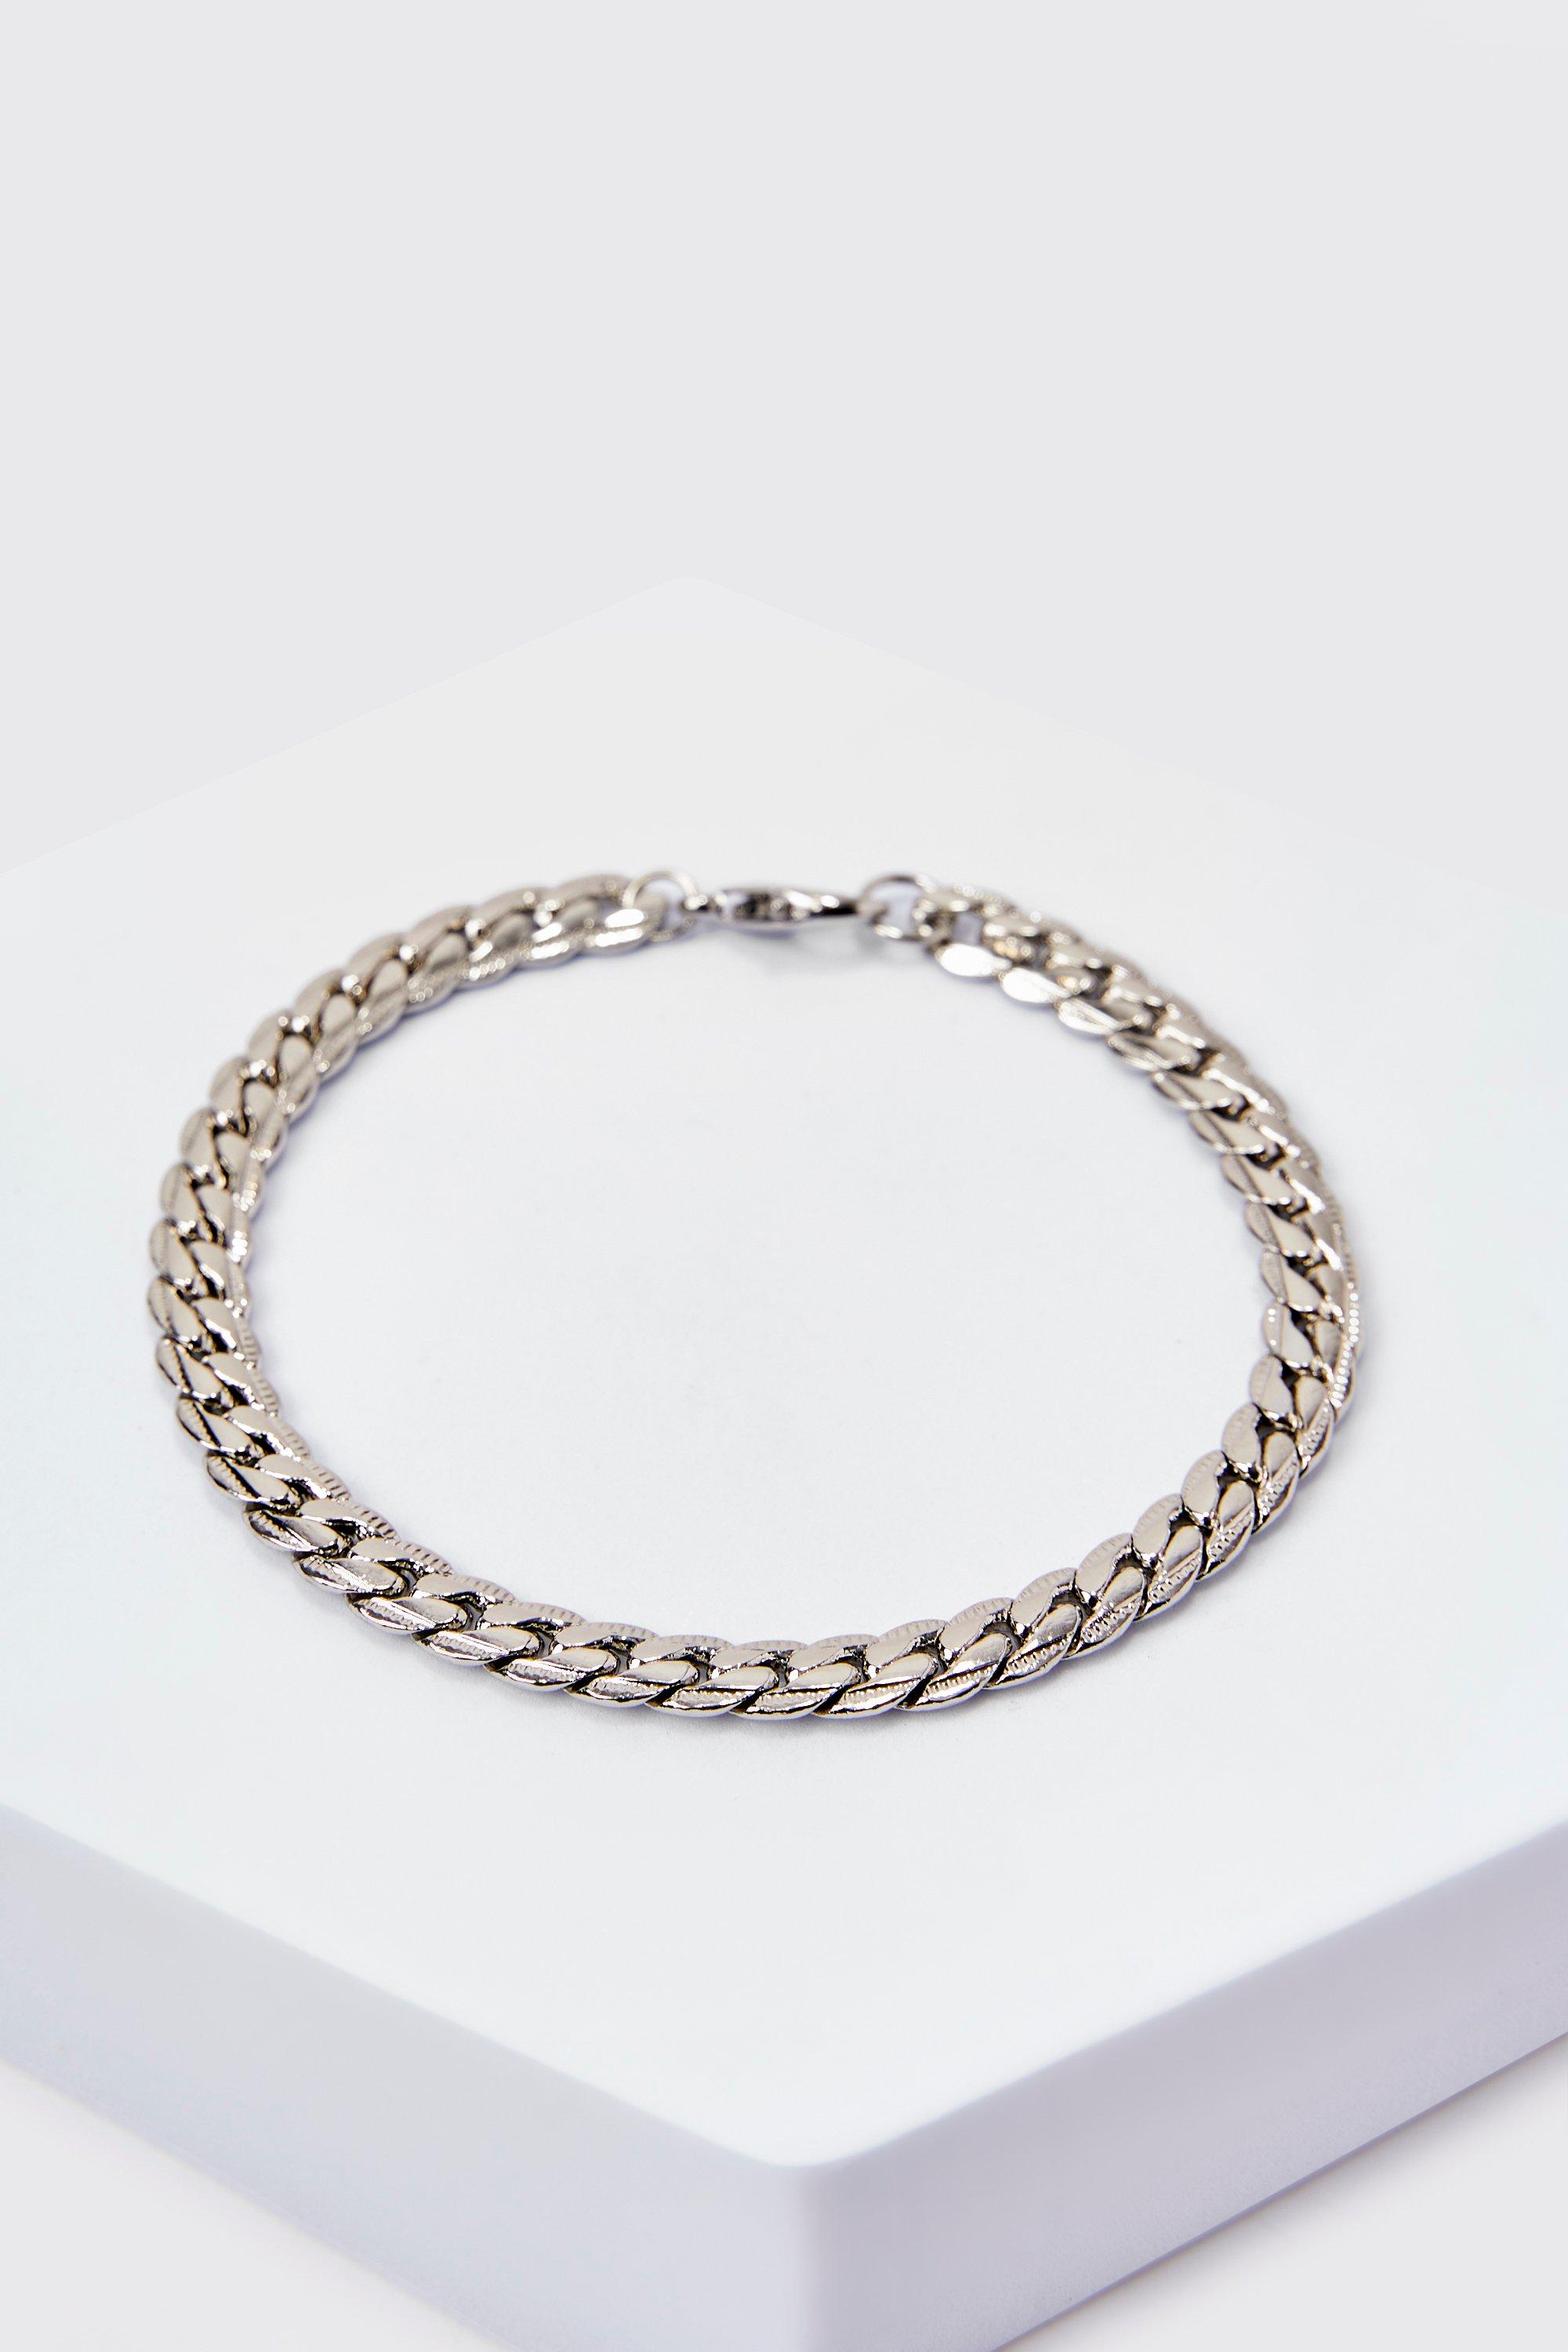 bracelet en chaîne épaisse homme - argent - one size, argent